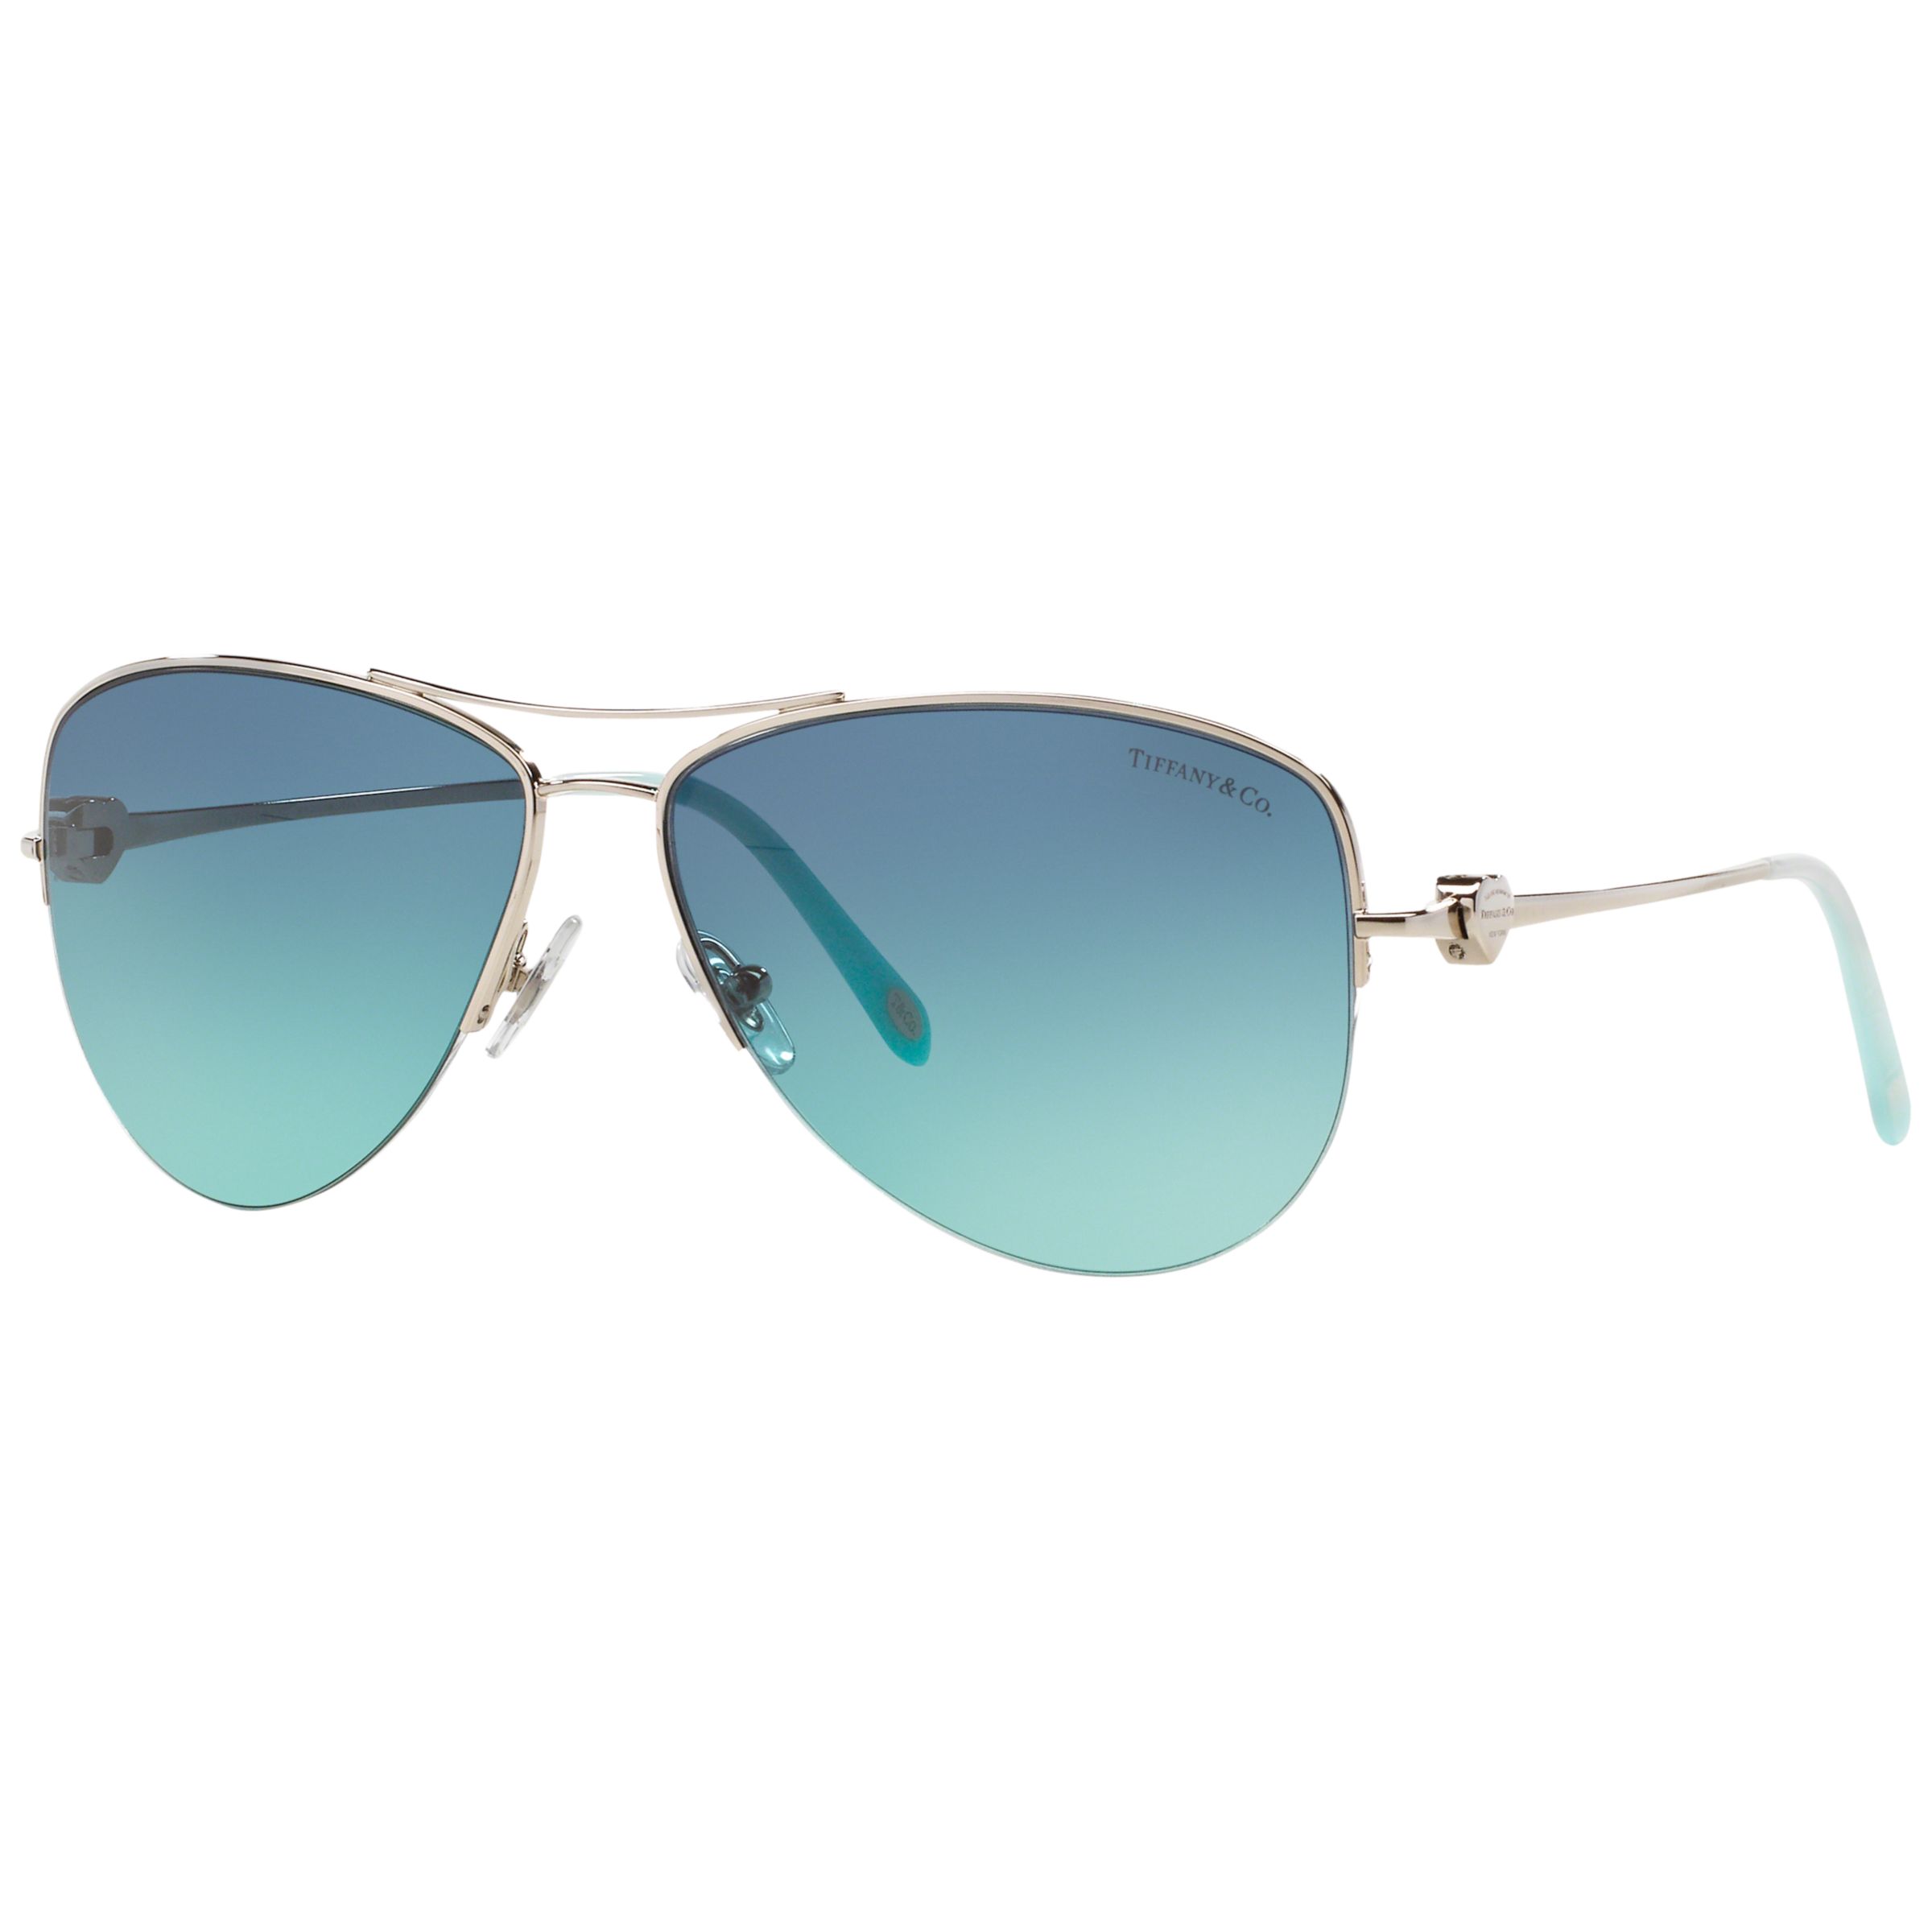 Tiffany And Co Tf3021 Aviator Sunglasses